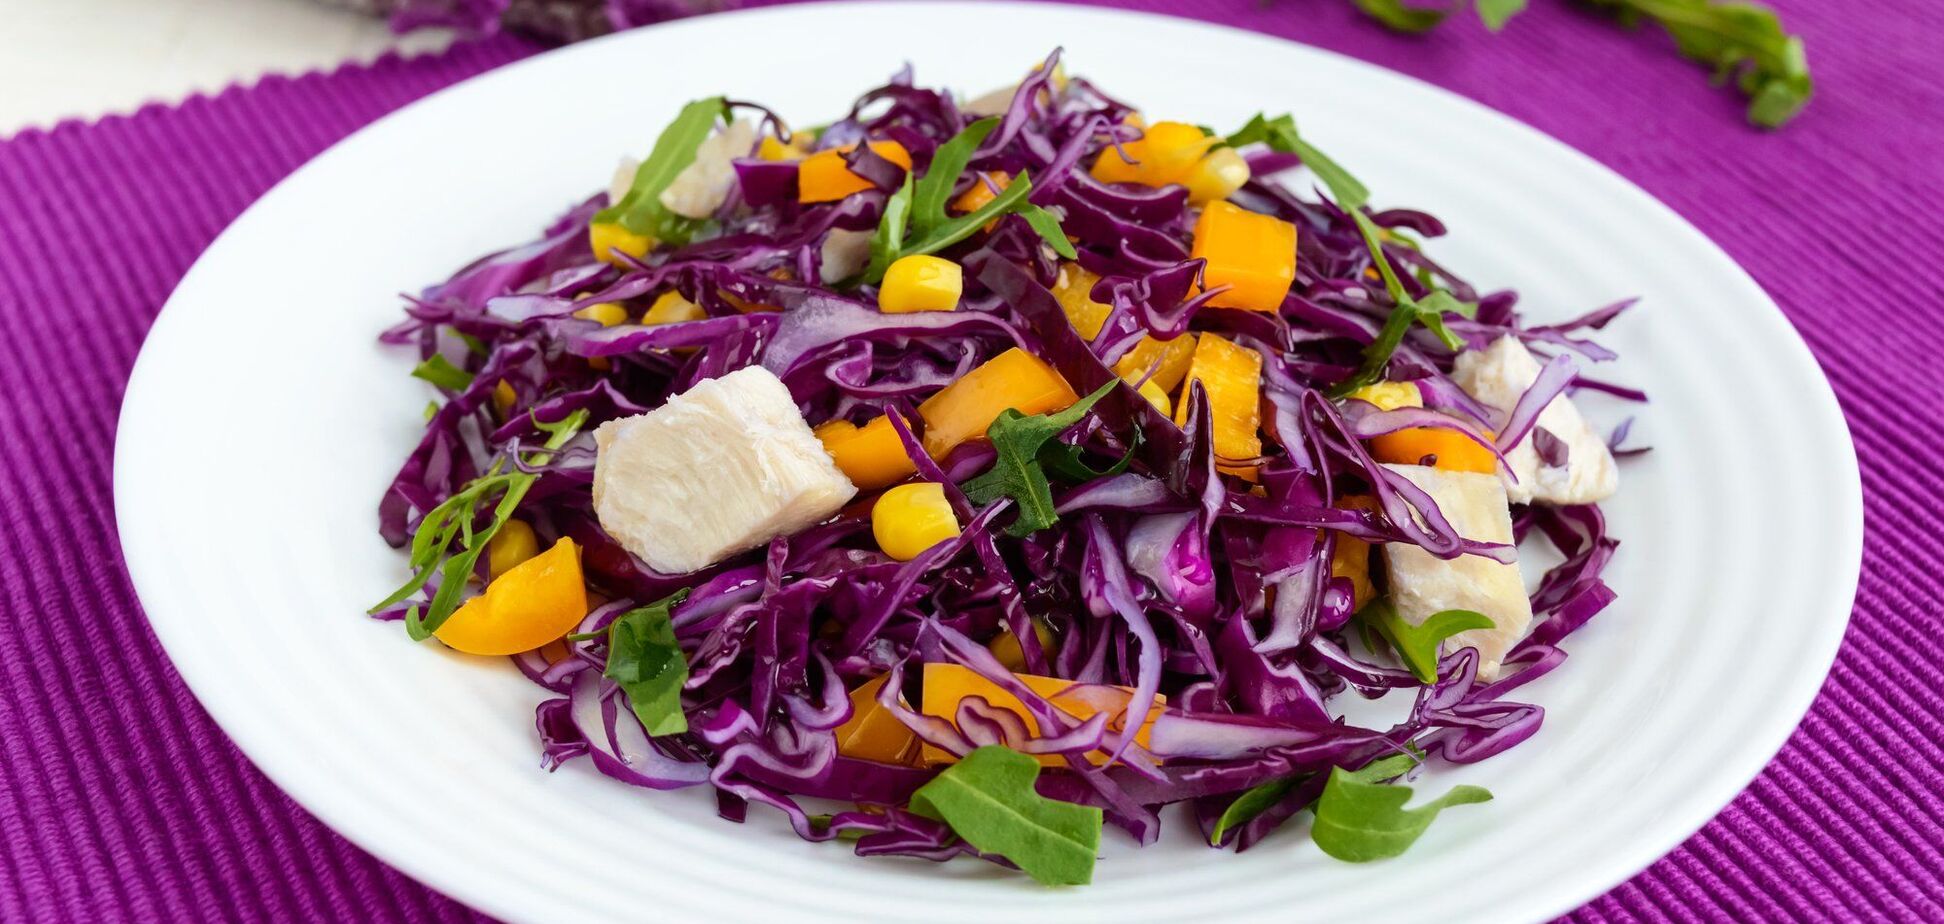 Салат з червоної капусти за 5 хвилин: ідеальний швидкий перекус